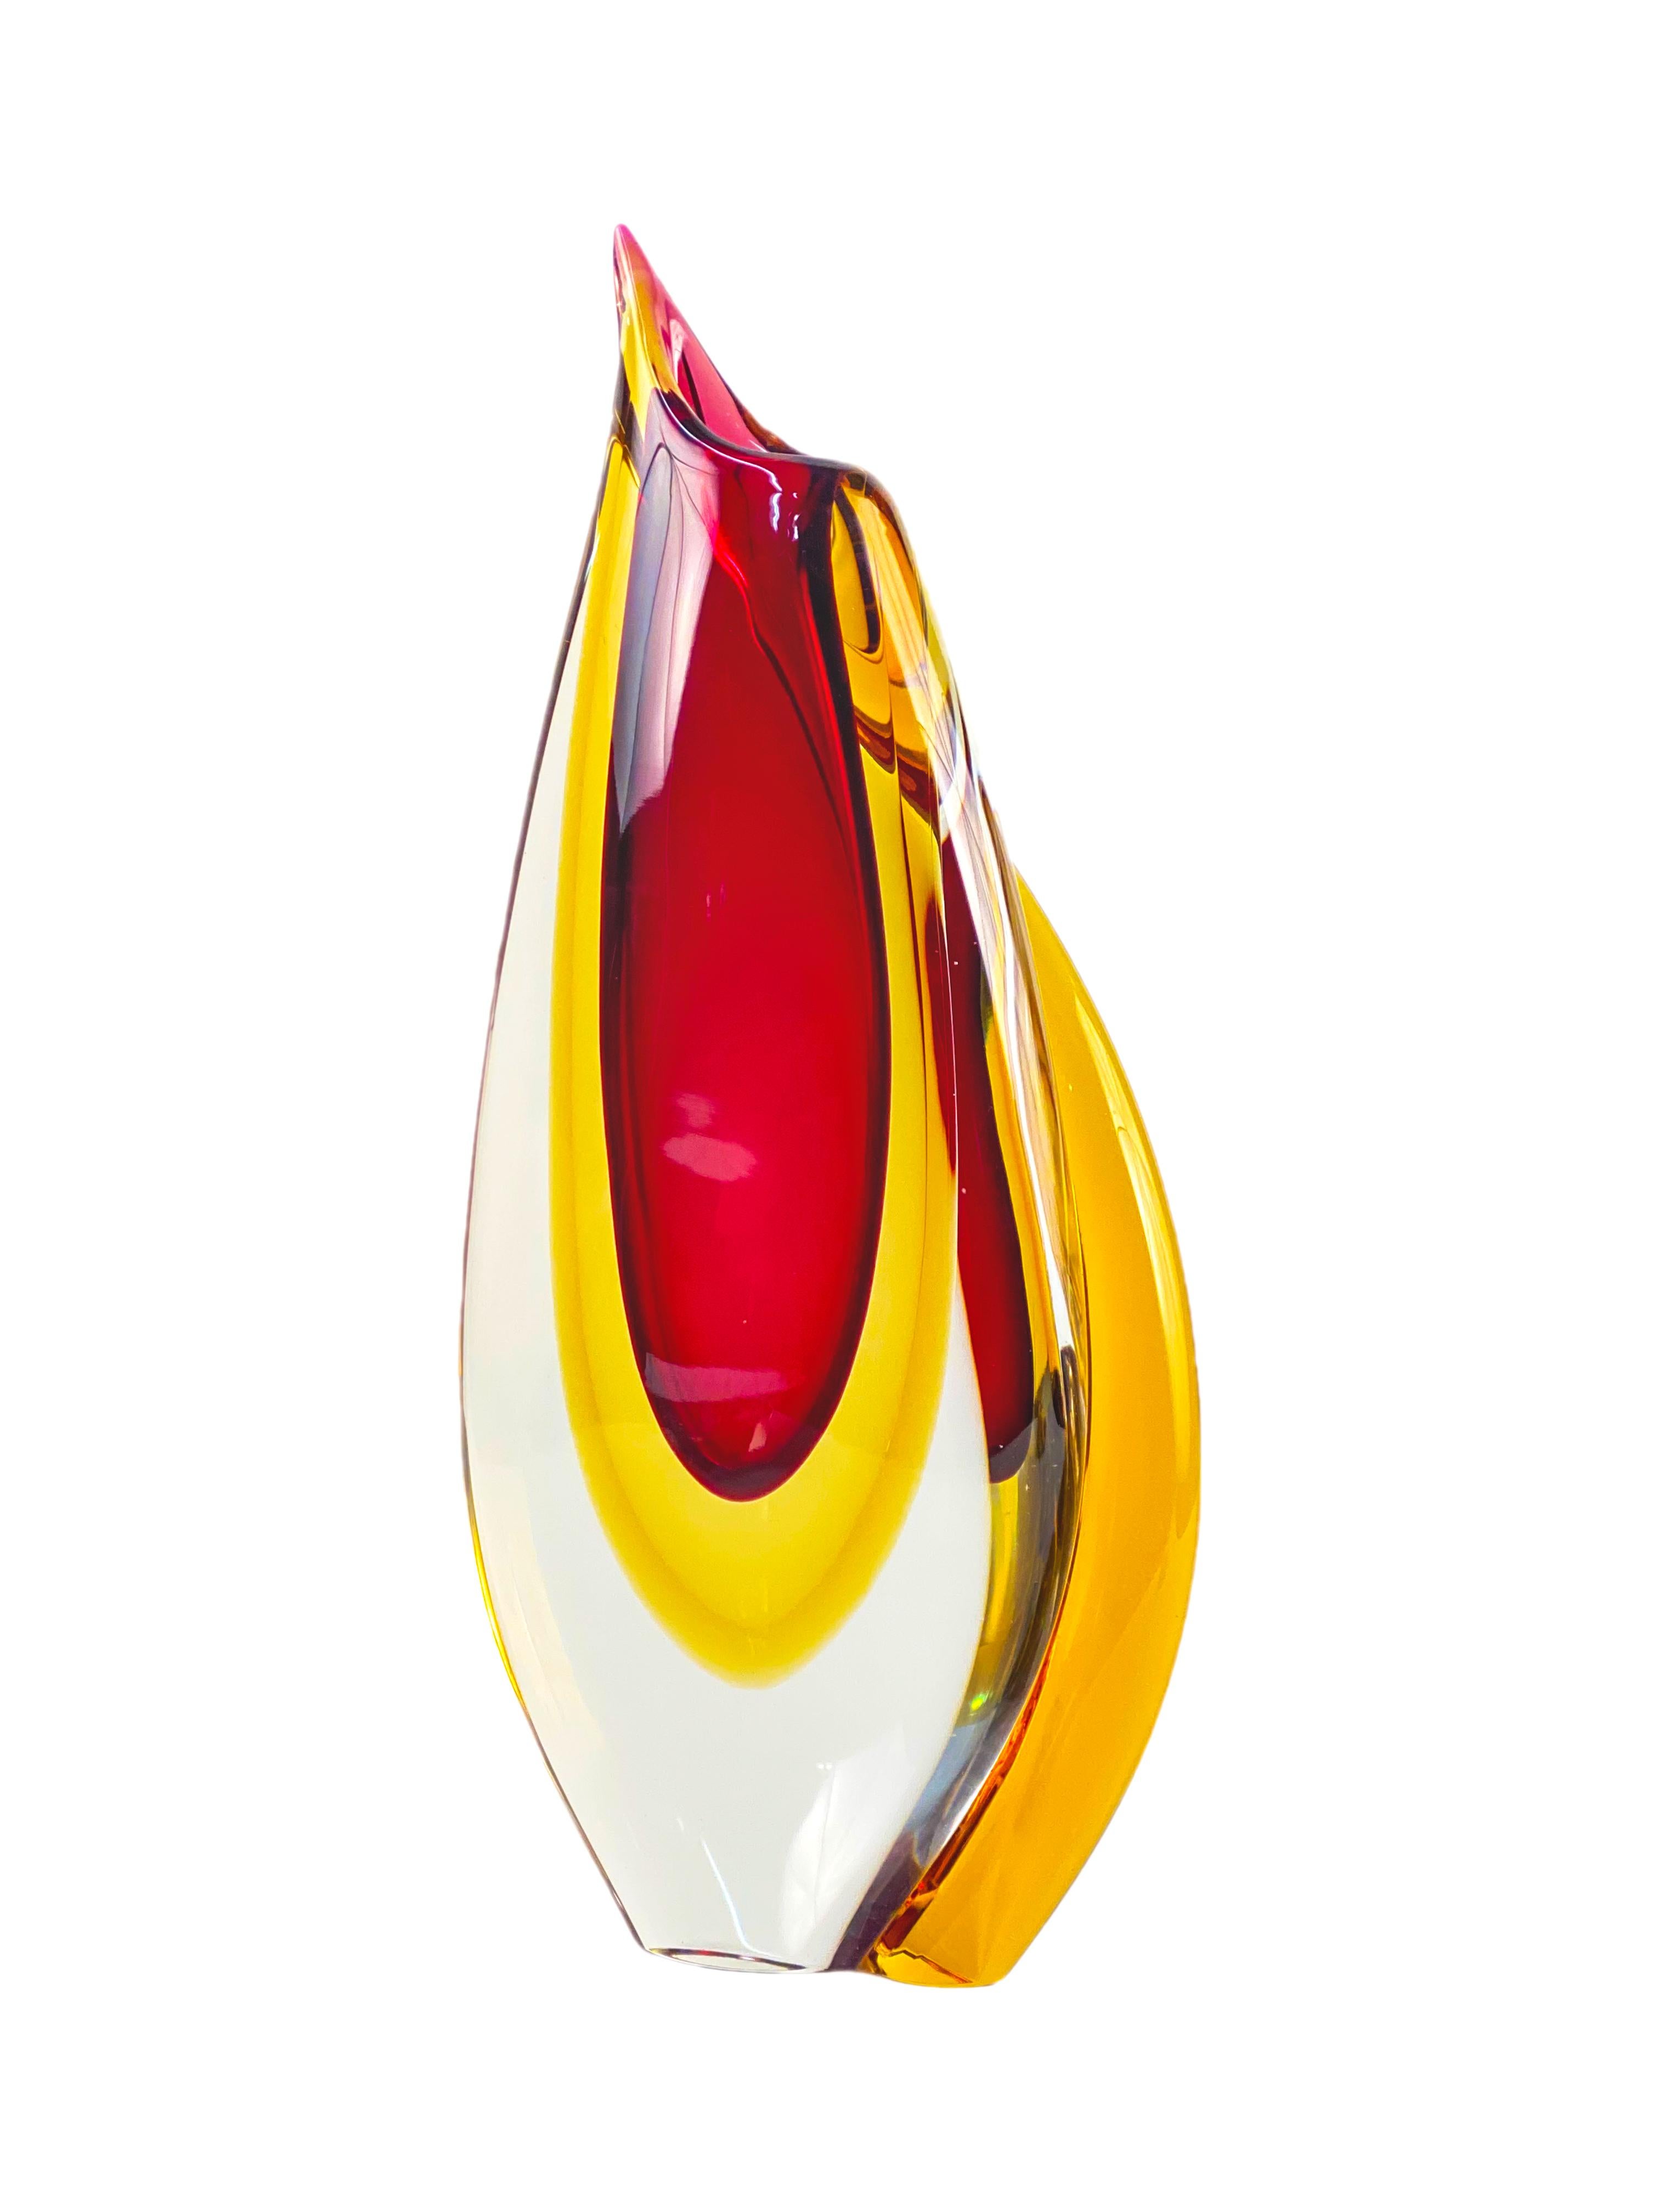 Other Modern Murano Italian Art Glass Vase by, Formia Vetri di Murano